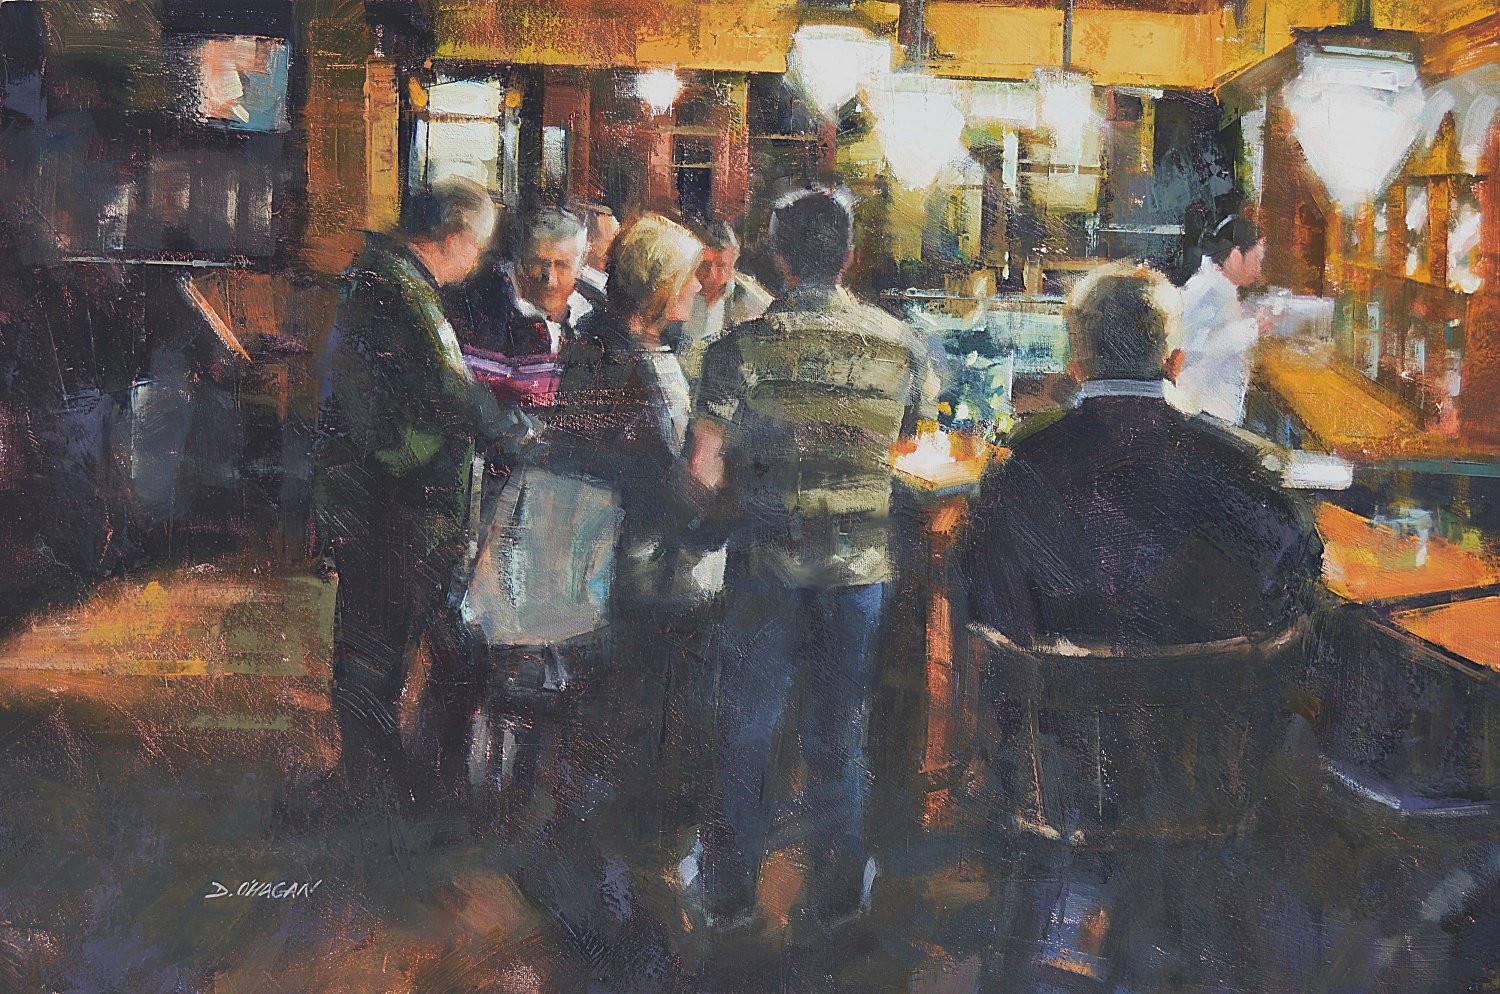 Cumiskeys Pub, Dublin - Desmond O’Hagan